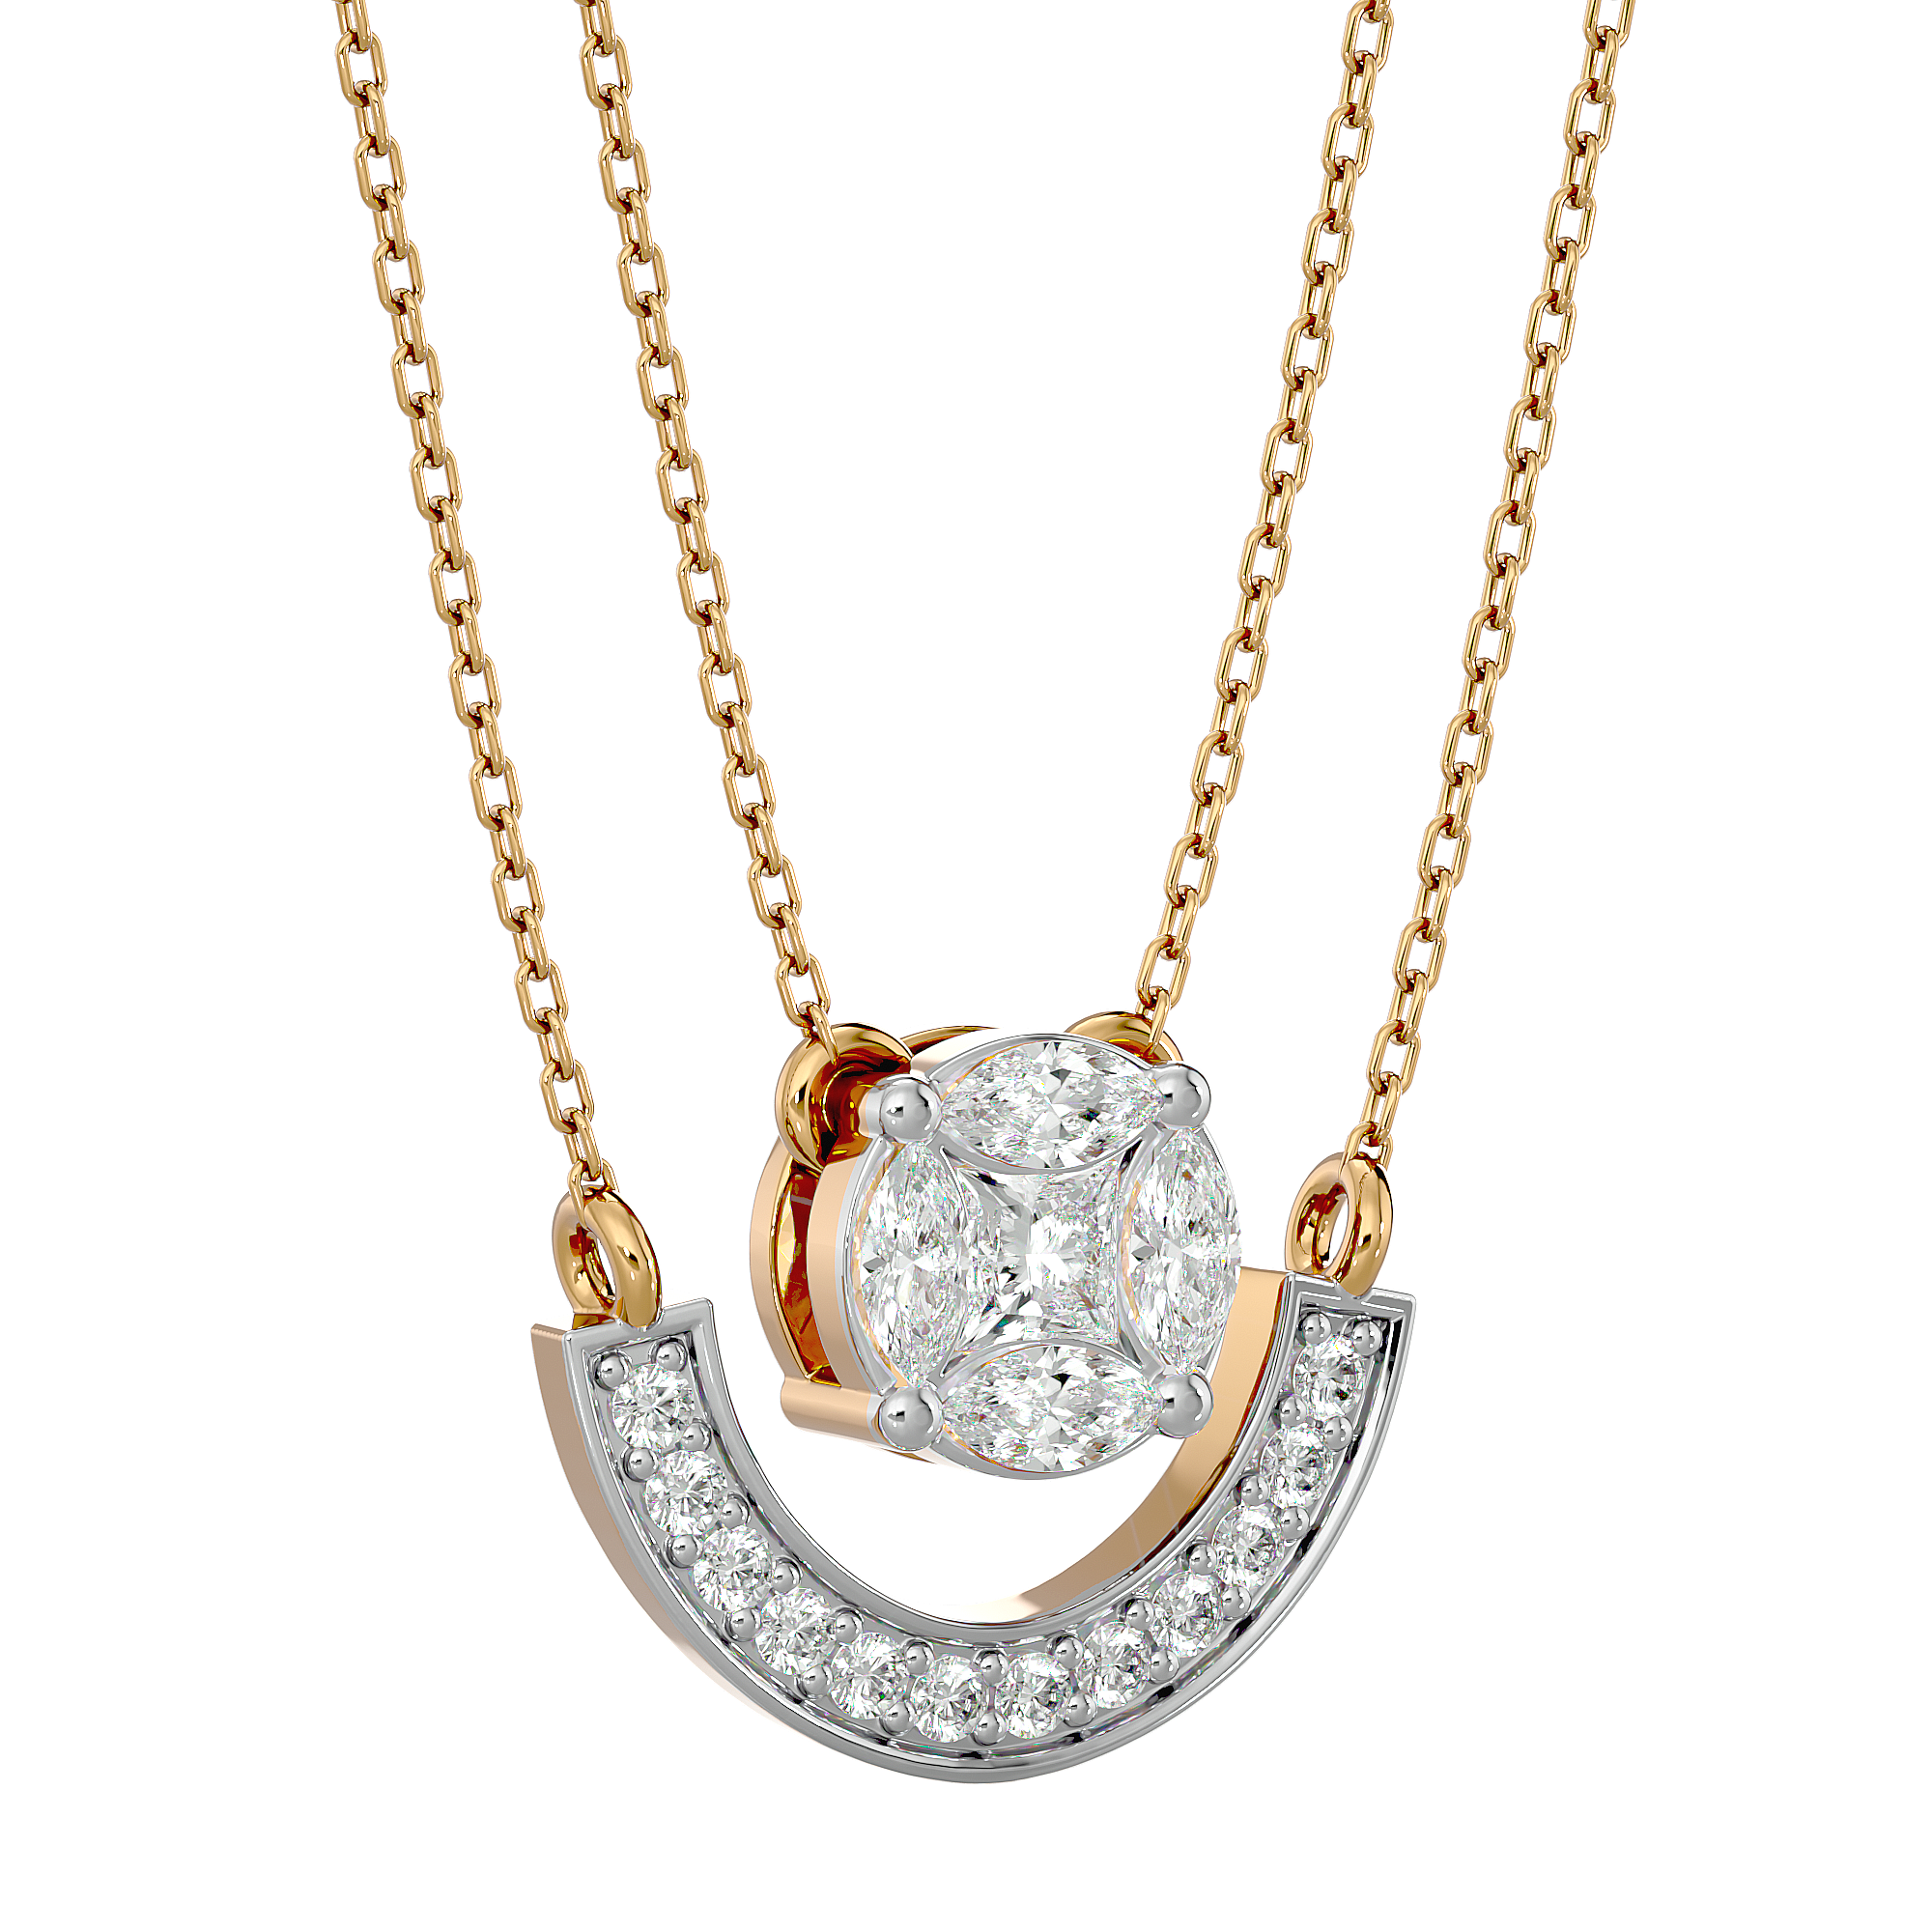 Celestial Cheer Diamond Pendant made from VVS EF diamond quality with 0.42 carat diamonds